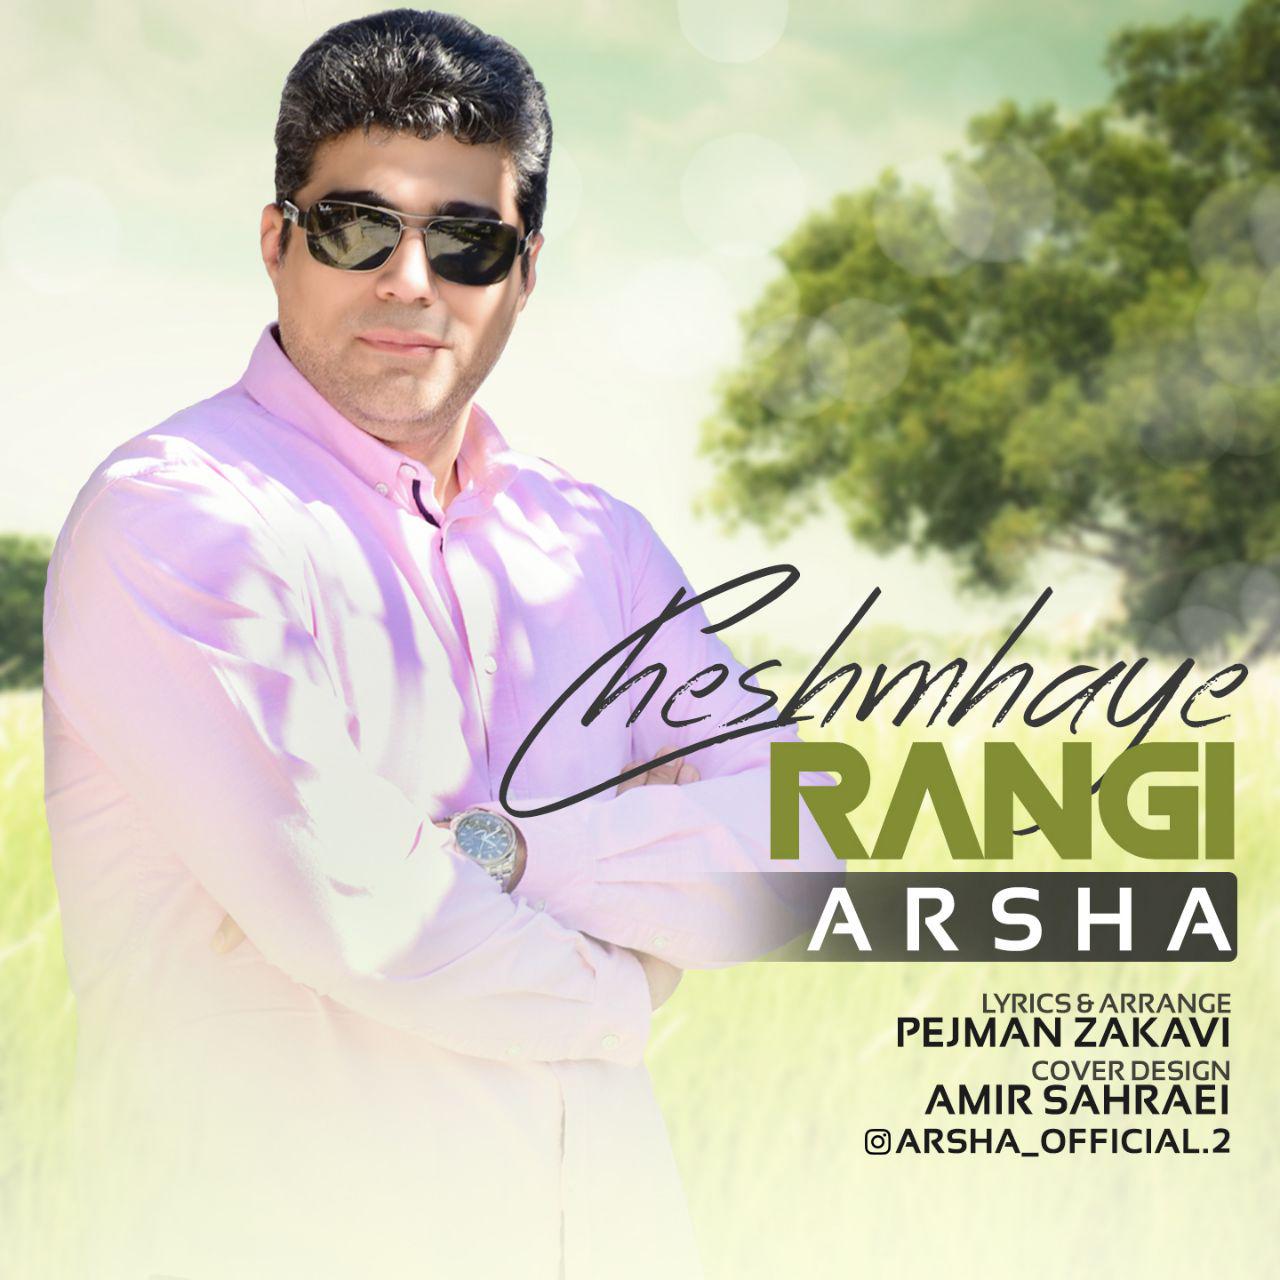  دانلود آهنگ جدید آرشا - چشمهای رنگی | Download New Music By Arsha - Cheshmhaye Rangi